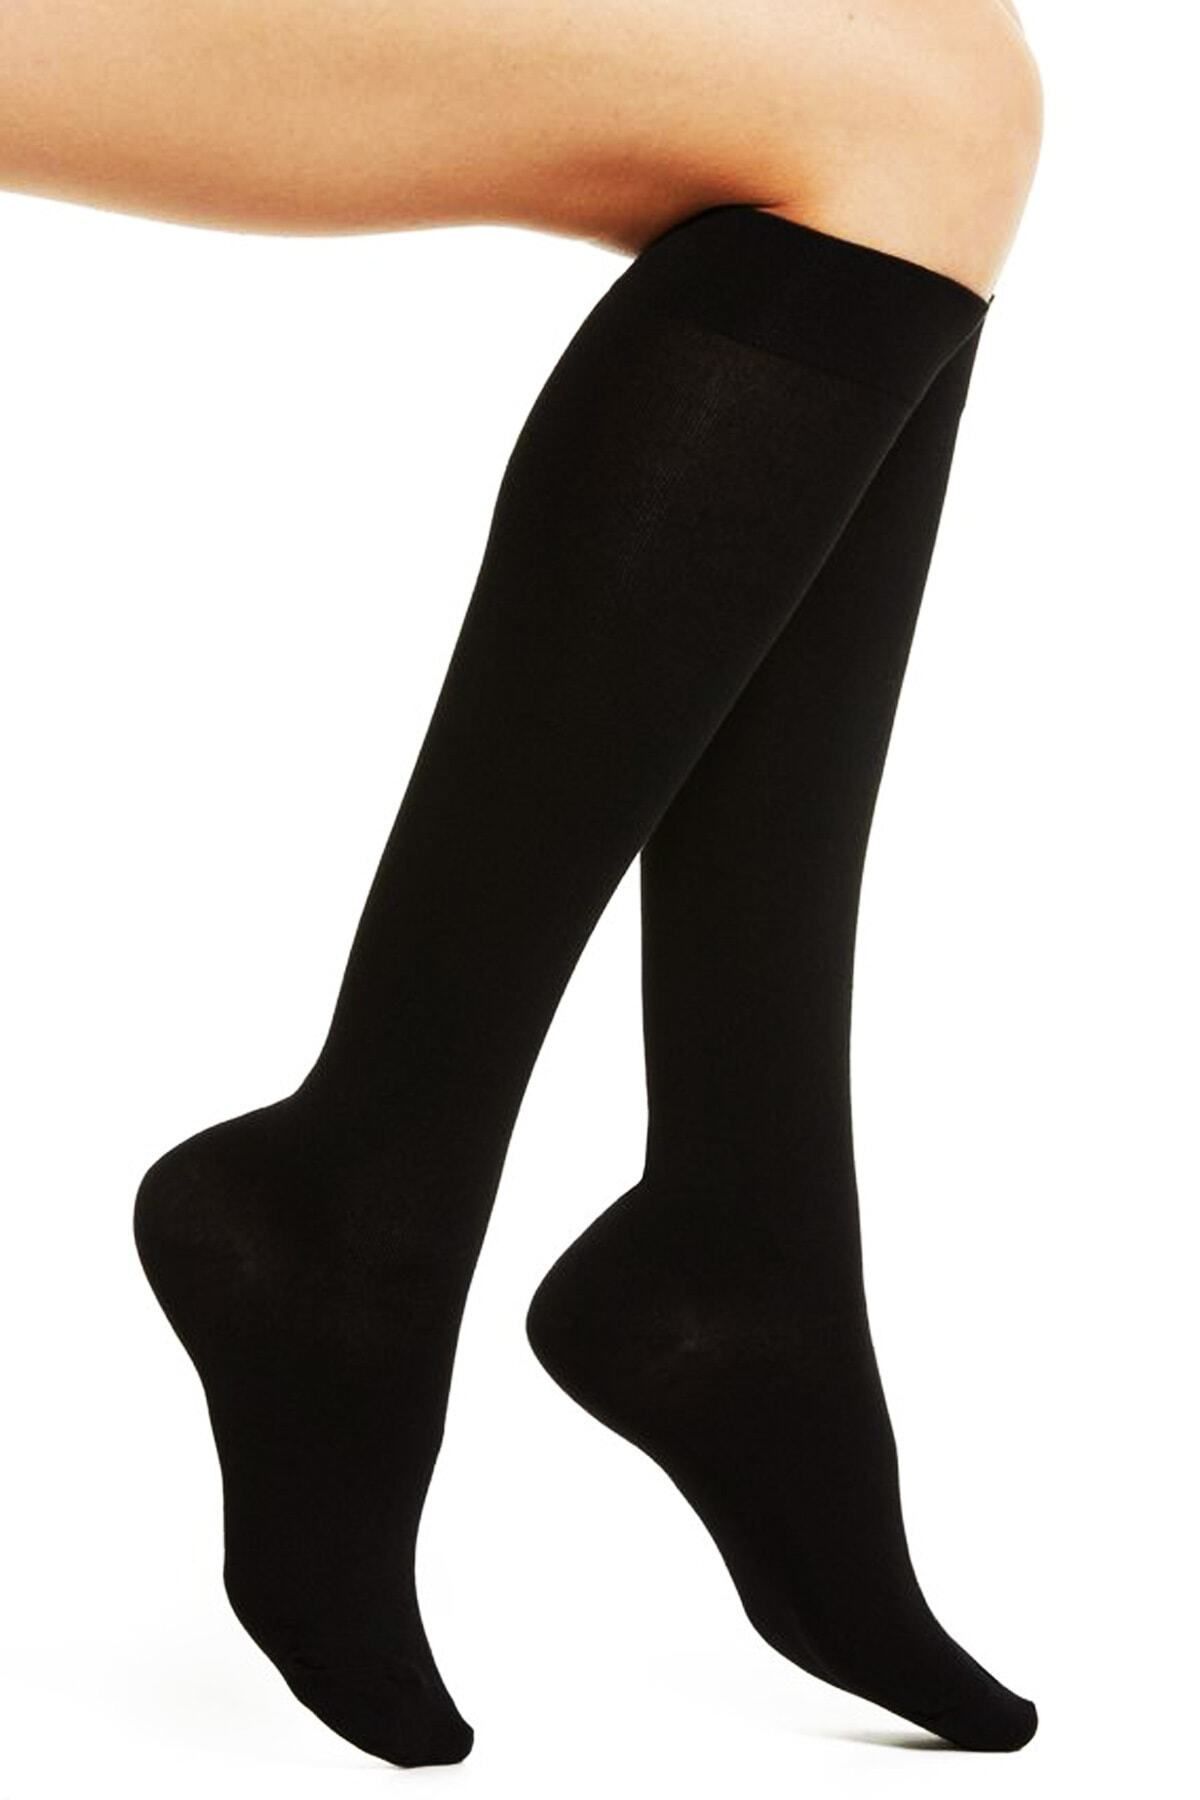 Design Socks Kadın Düz Pamuklu Siyah Diz Altı Çorap - Desen Çorap